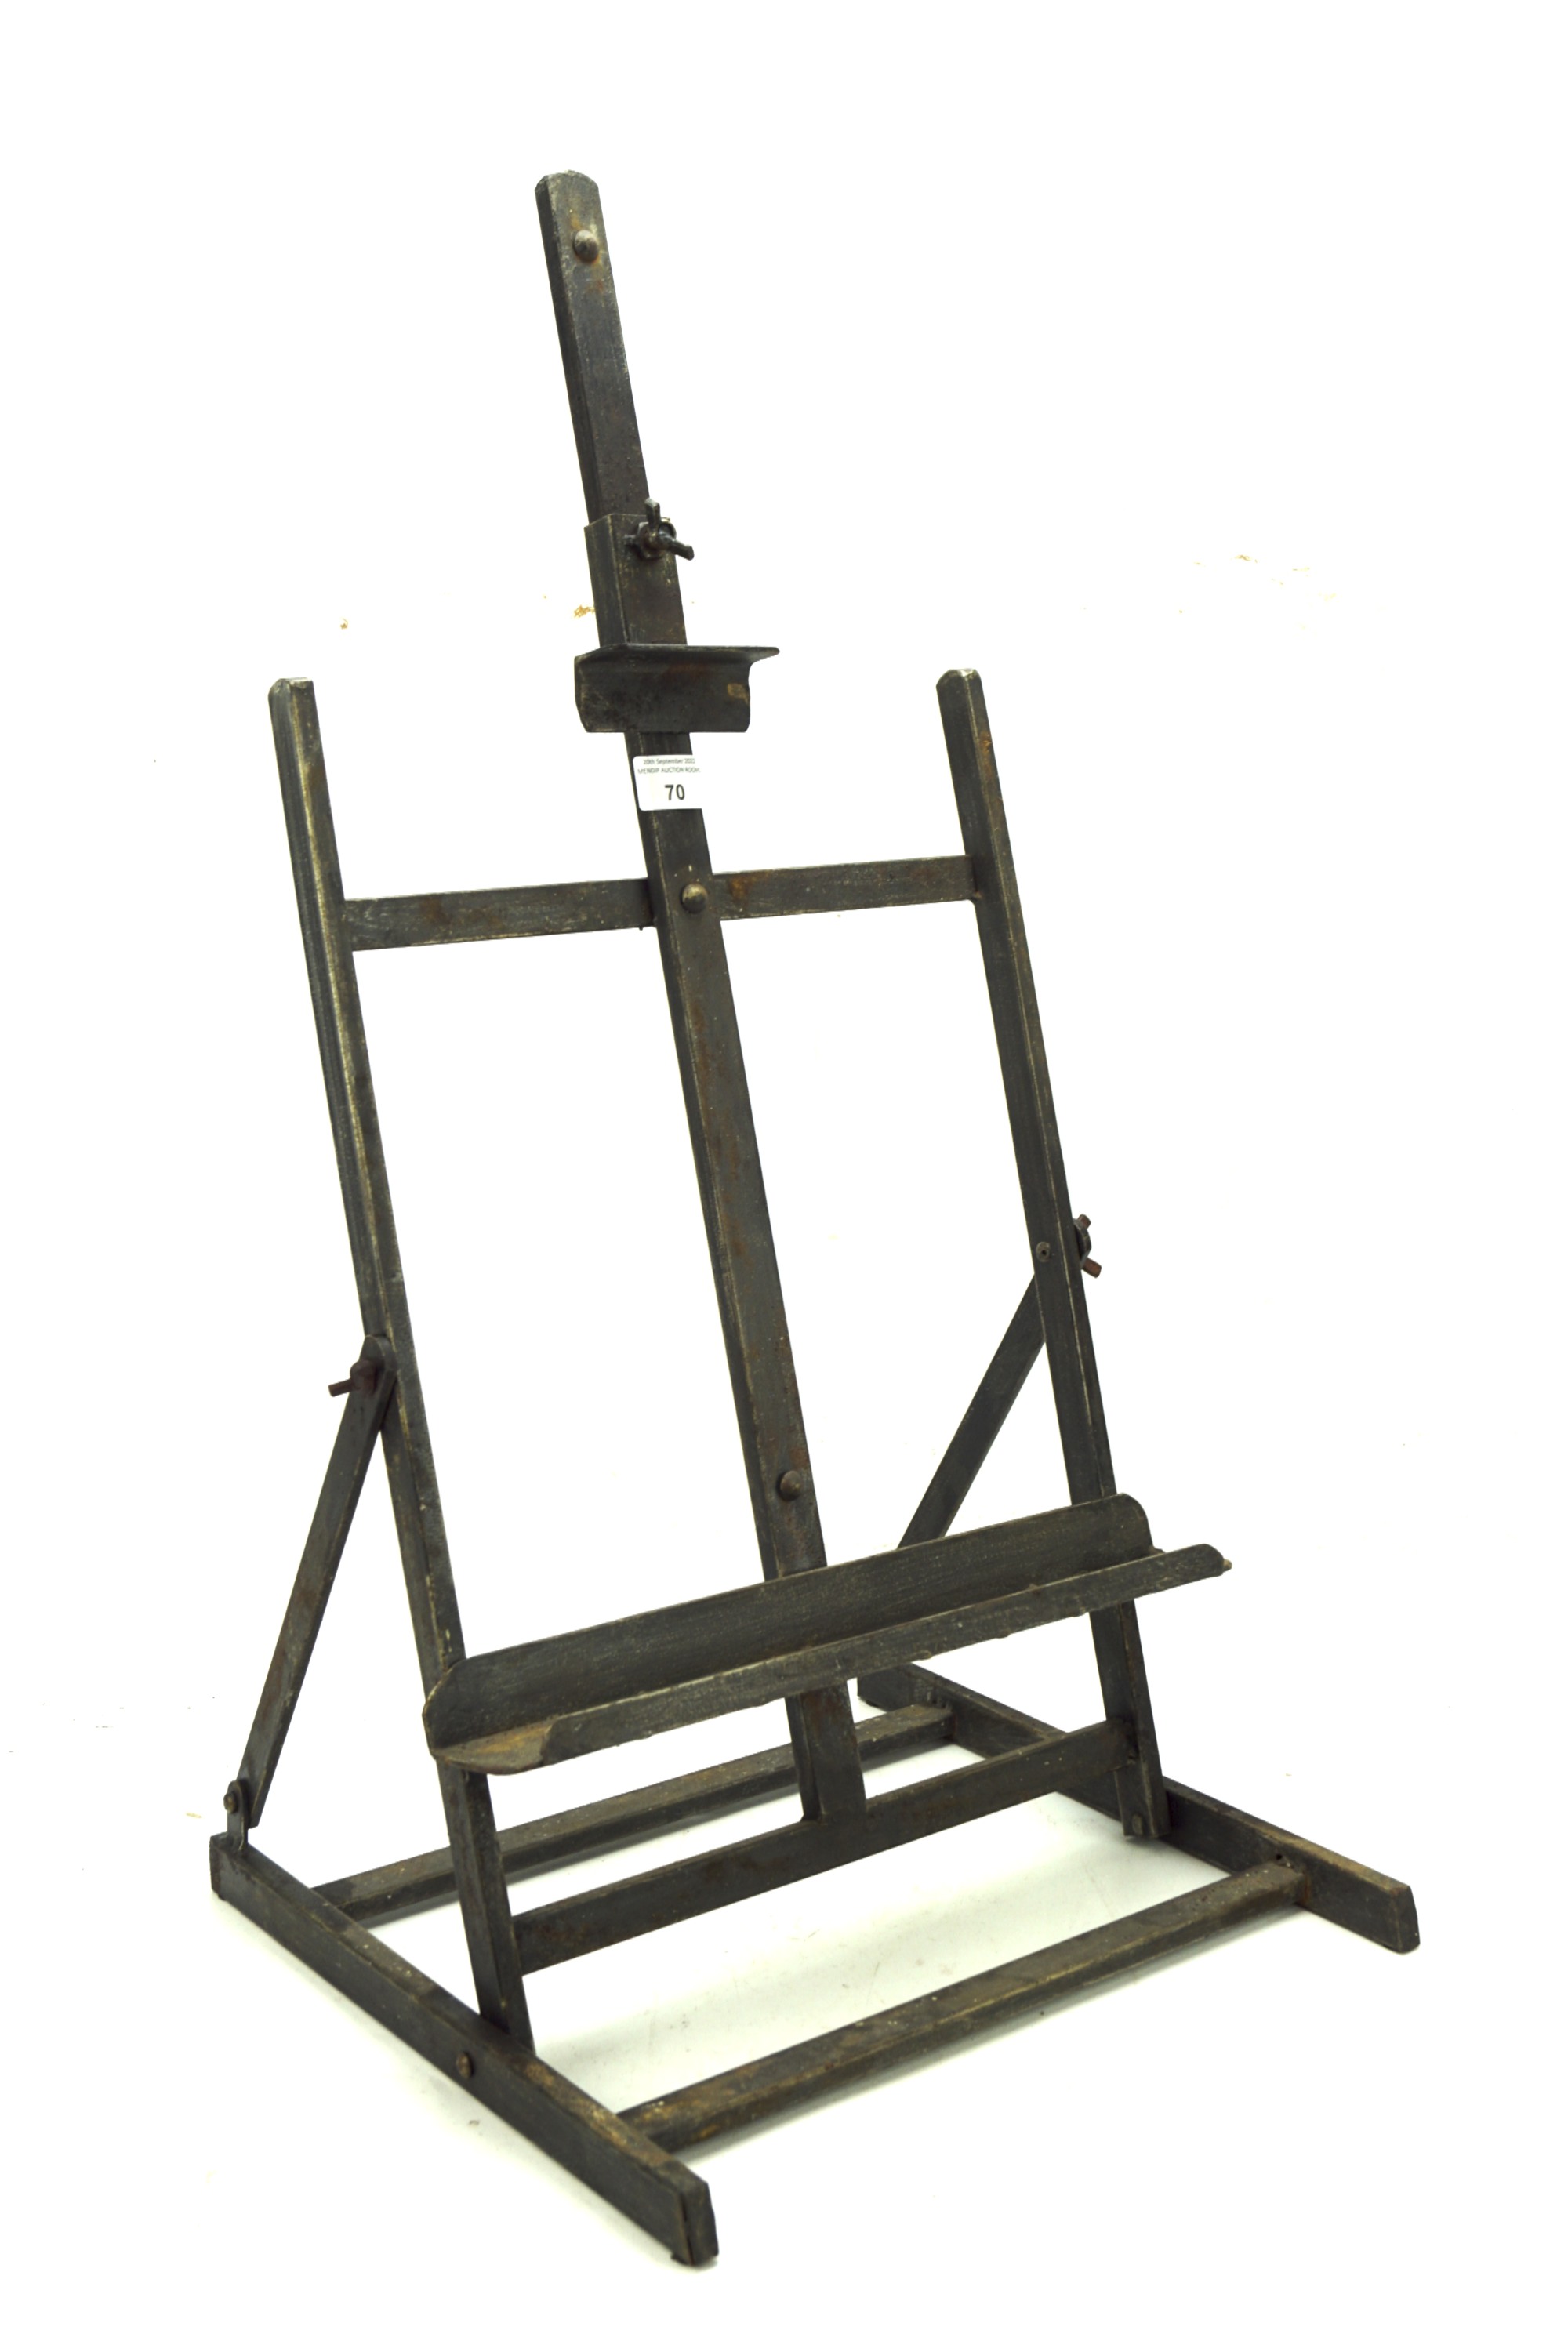 A vintage adjustable easel stand.